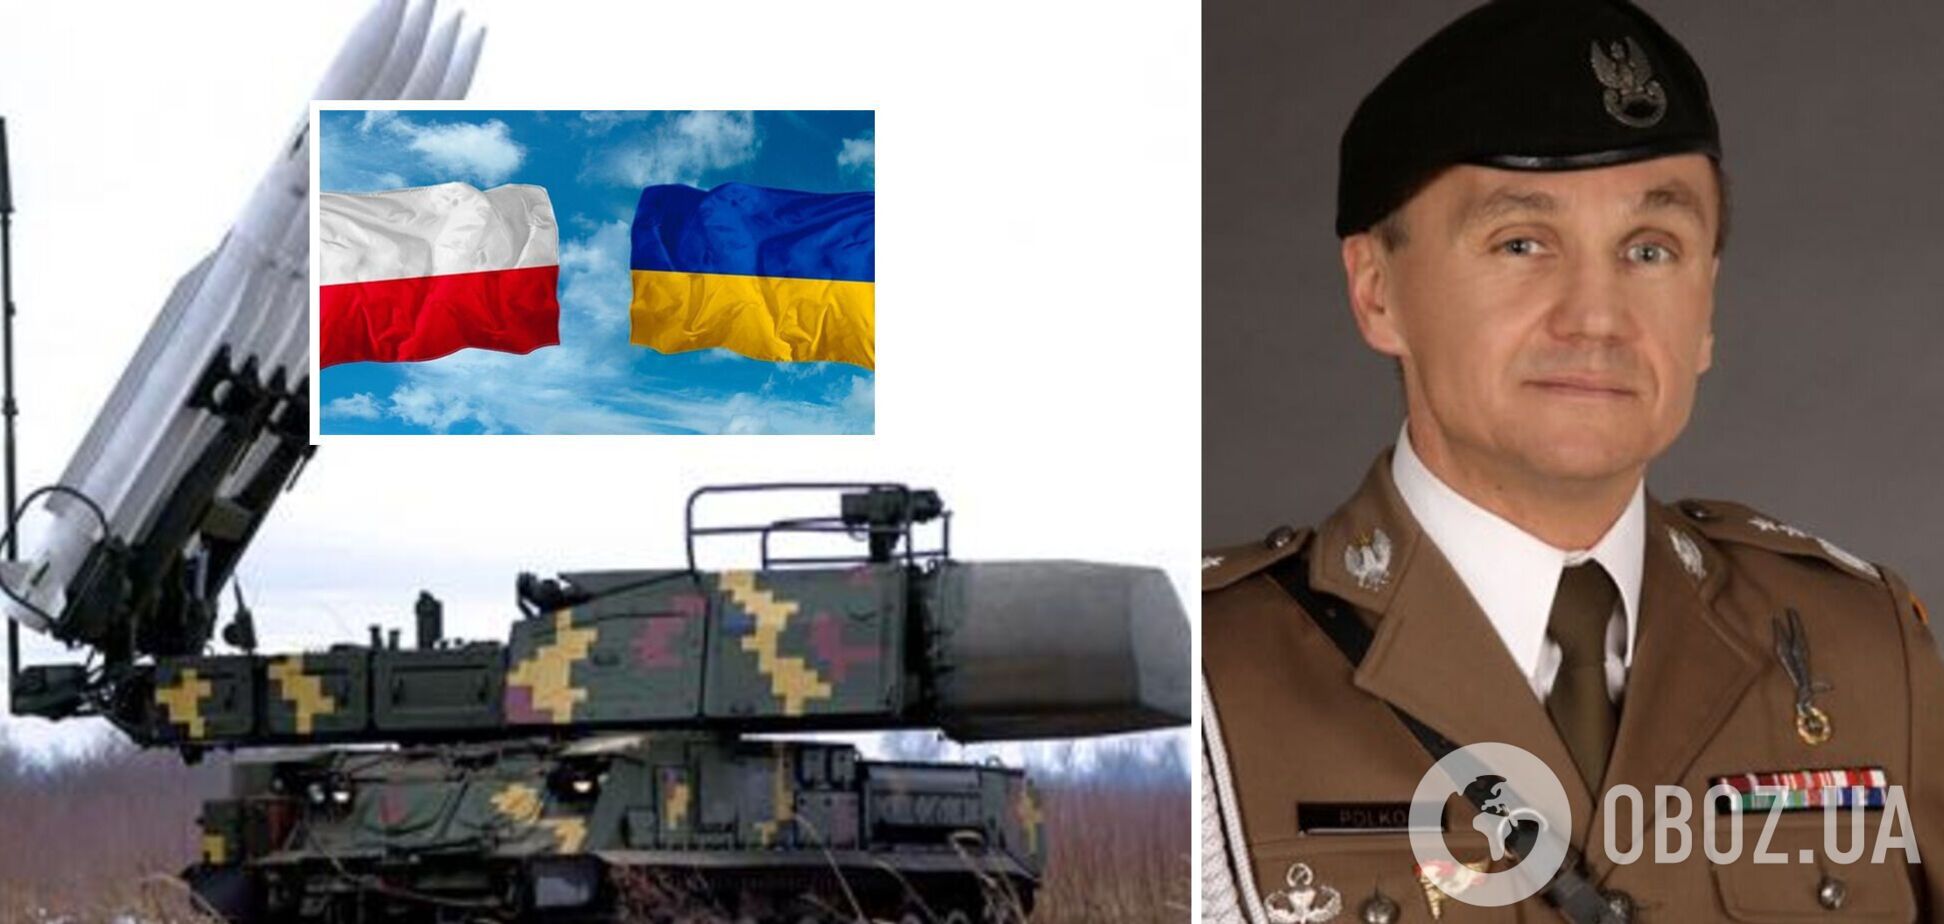 Польша могла бы разместить ПВО Войска Польского на территории Украины, чтобы прикрывать границу, – польский генерал Полко